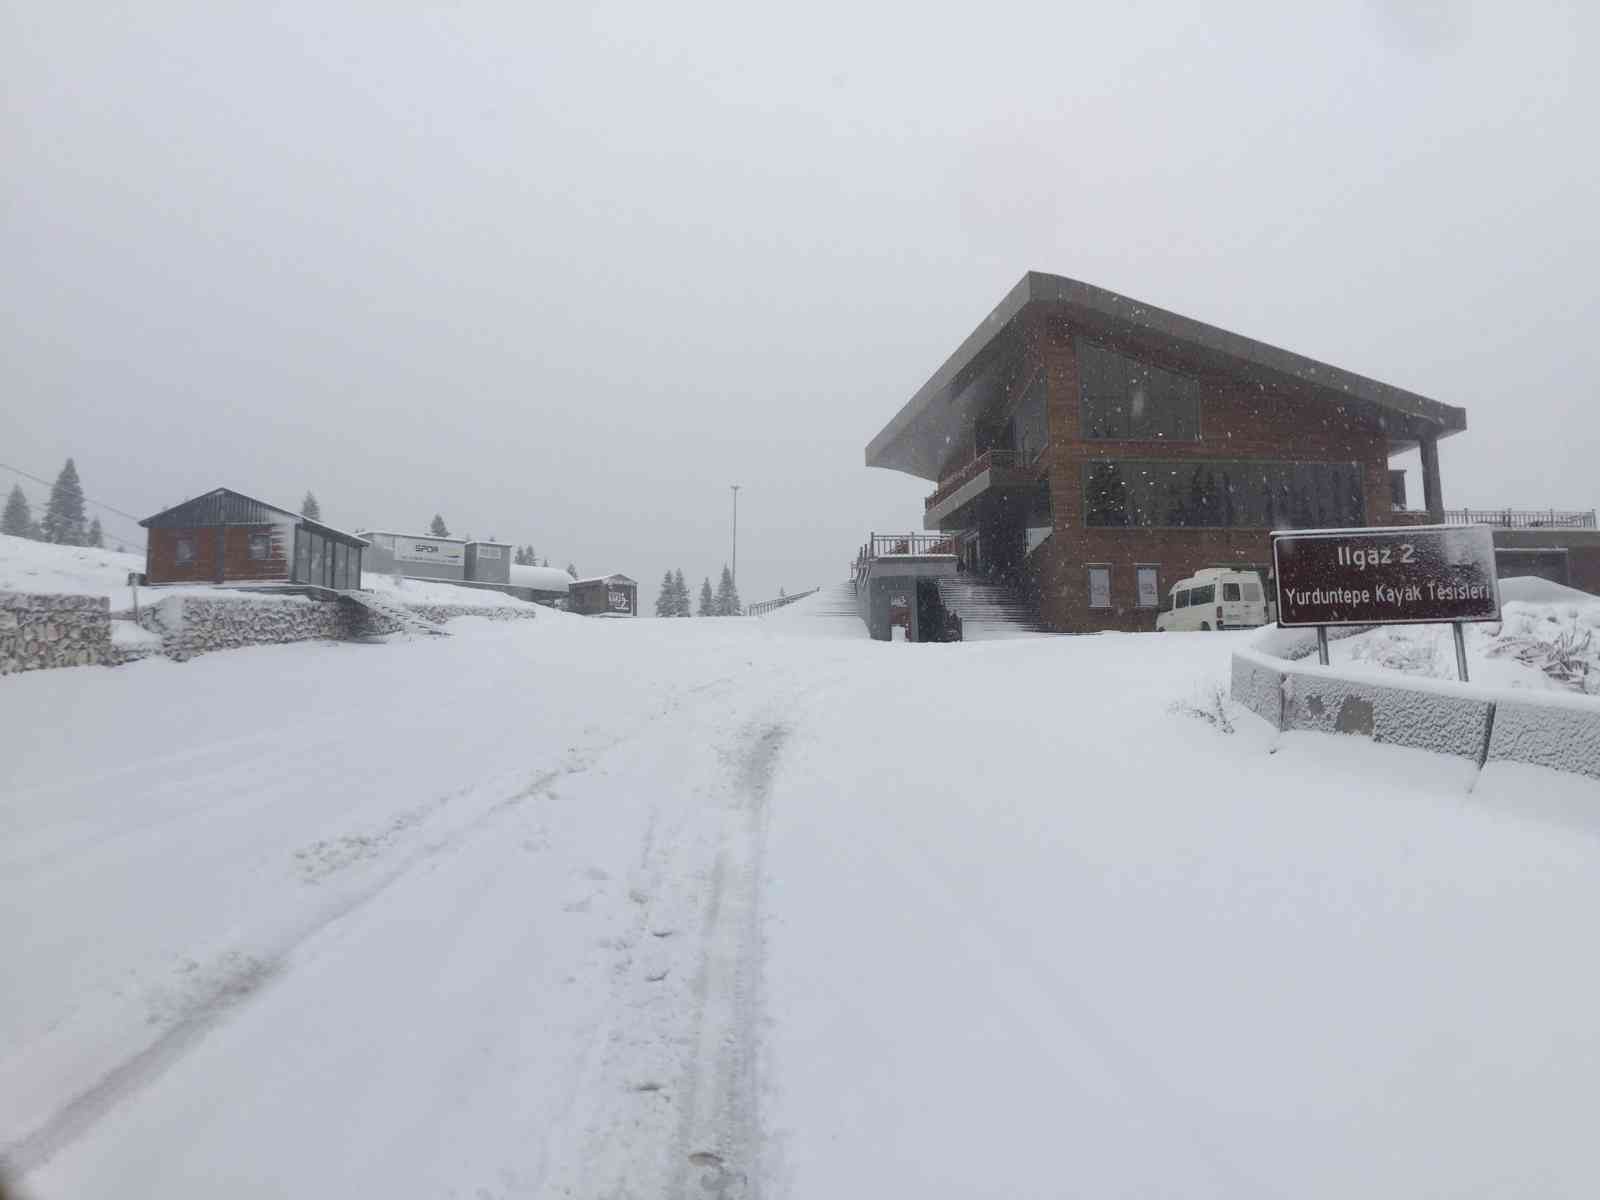 Kastamonu’nun yüksek kesimlerinde kar yağışı etkili oluyor #kastamonu